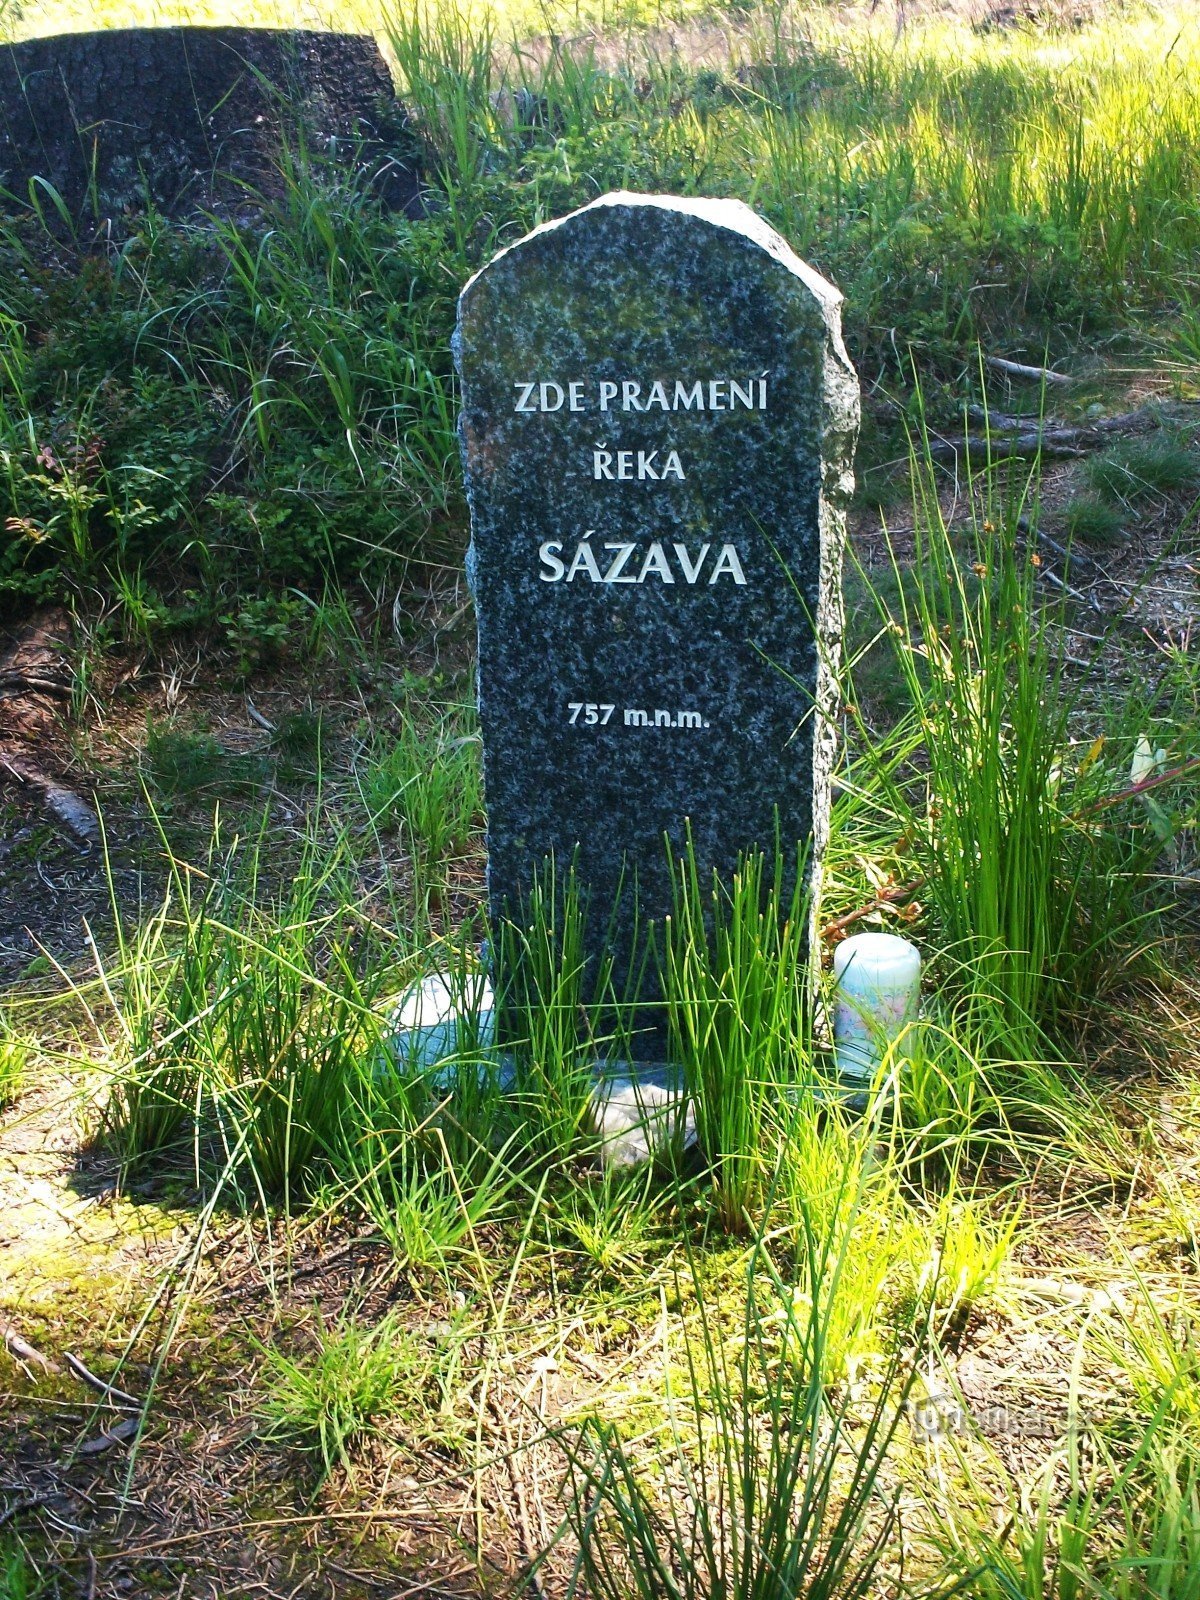 Bezeichnung der Quelle von Sázava